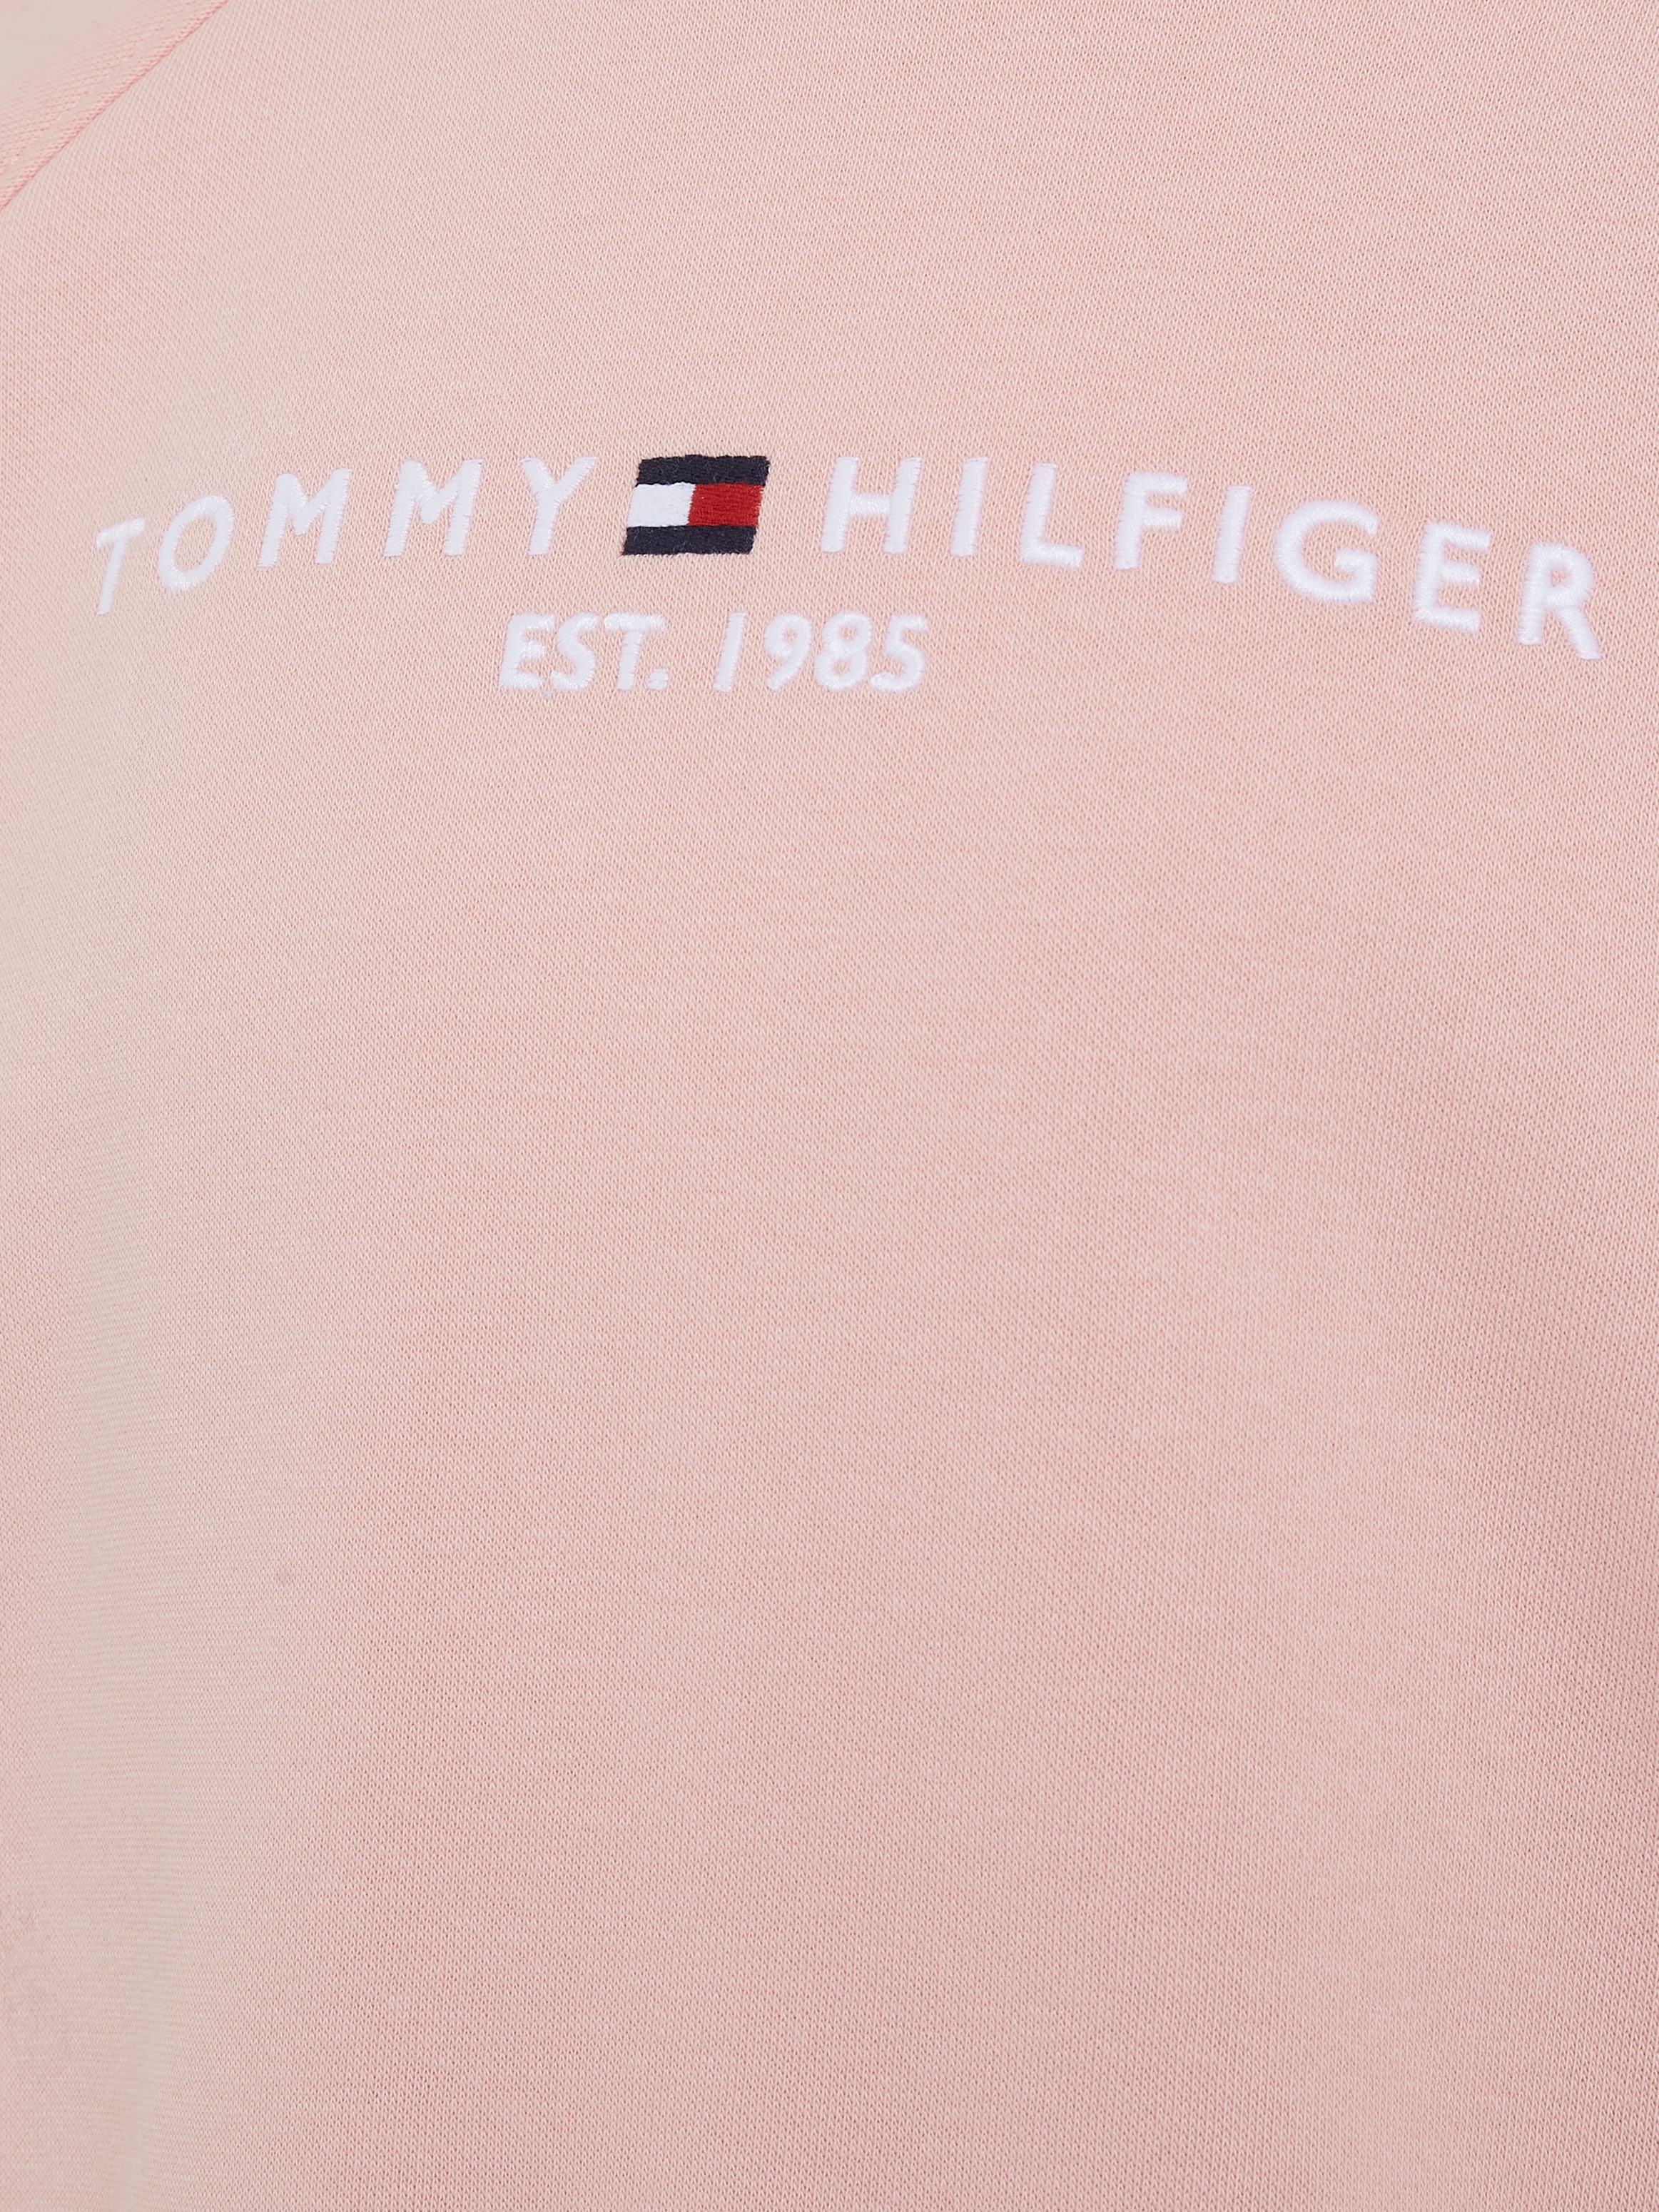 Tommy Hilfiger Sweatshirt »ESSENTIAL EMBROIDERED FLEECE CN«, Kinder bis 16 Jahre mit Logoprägung